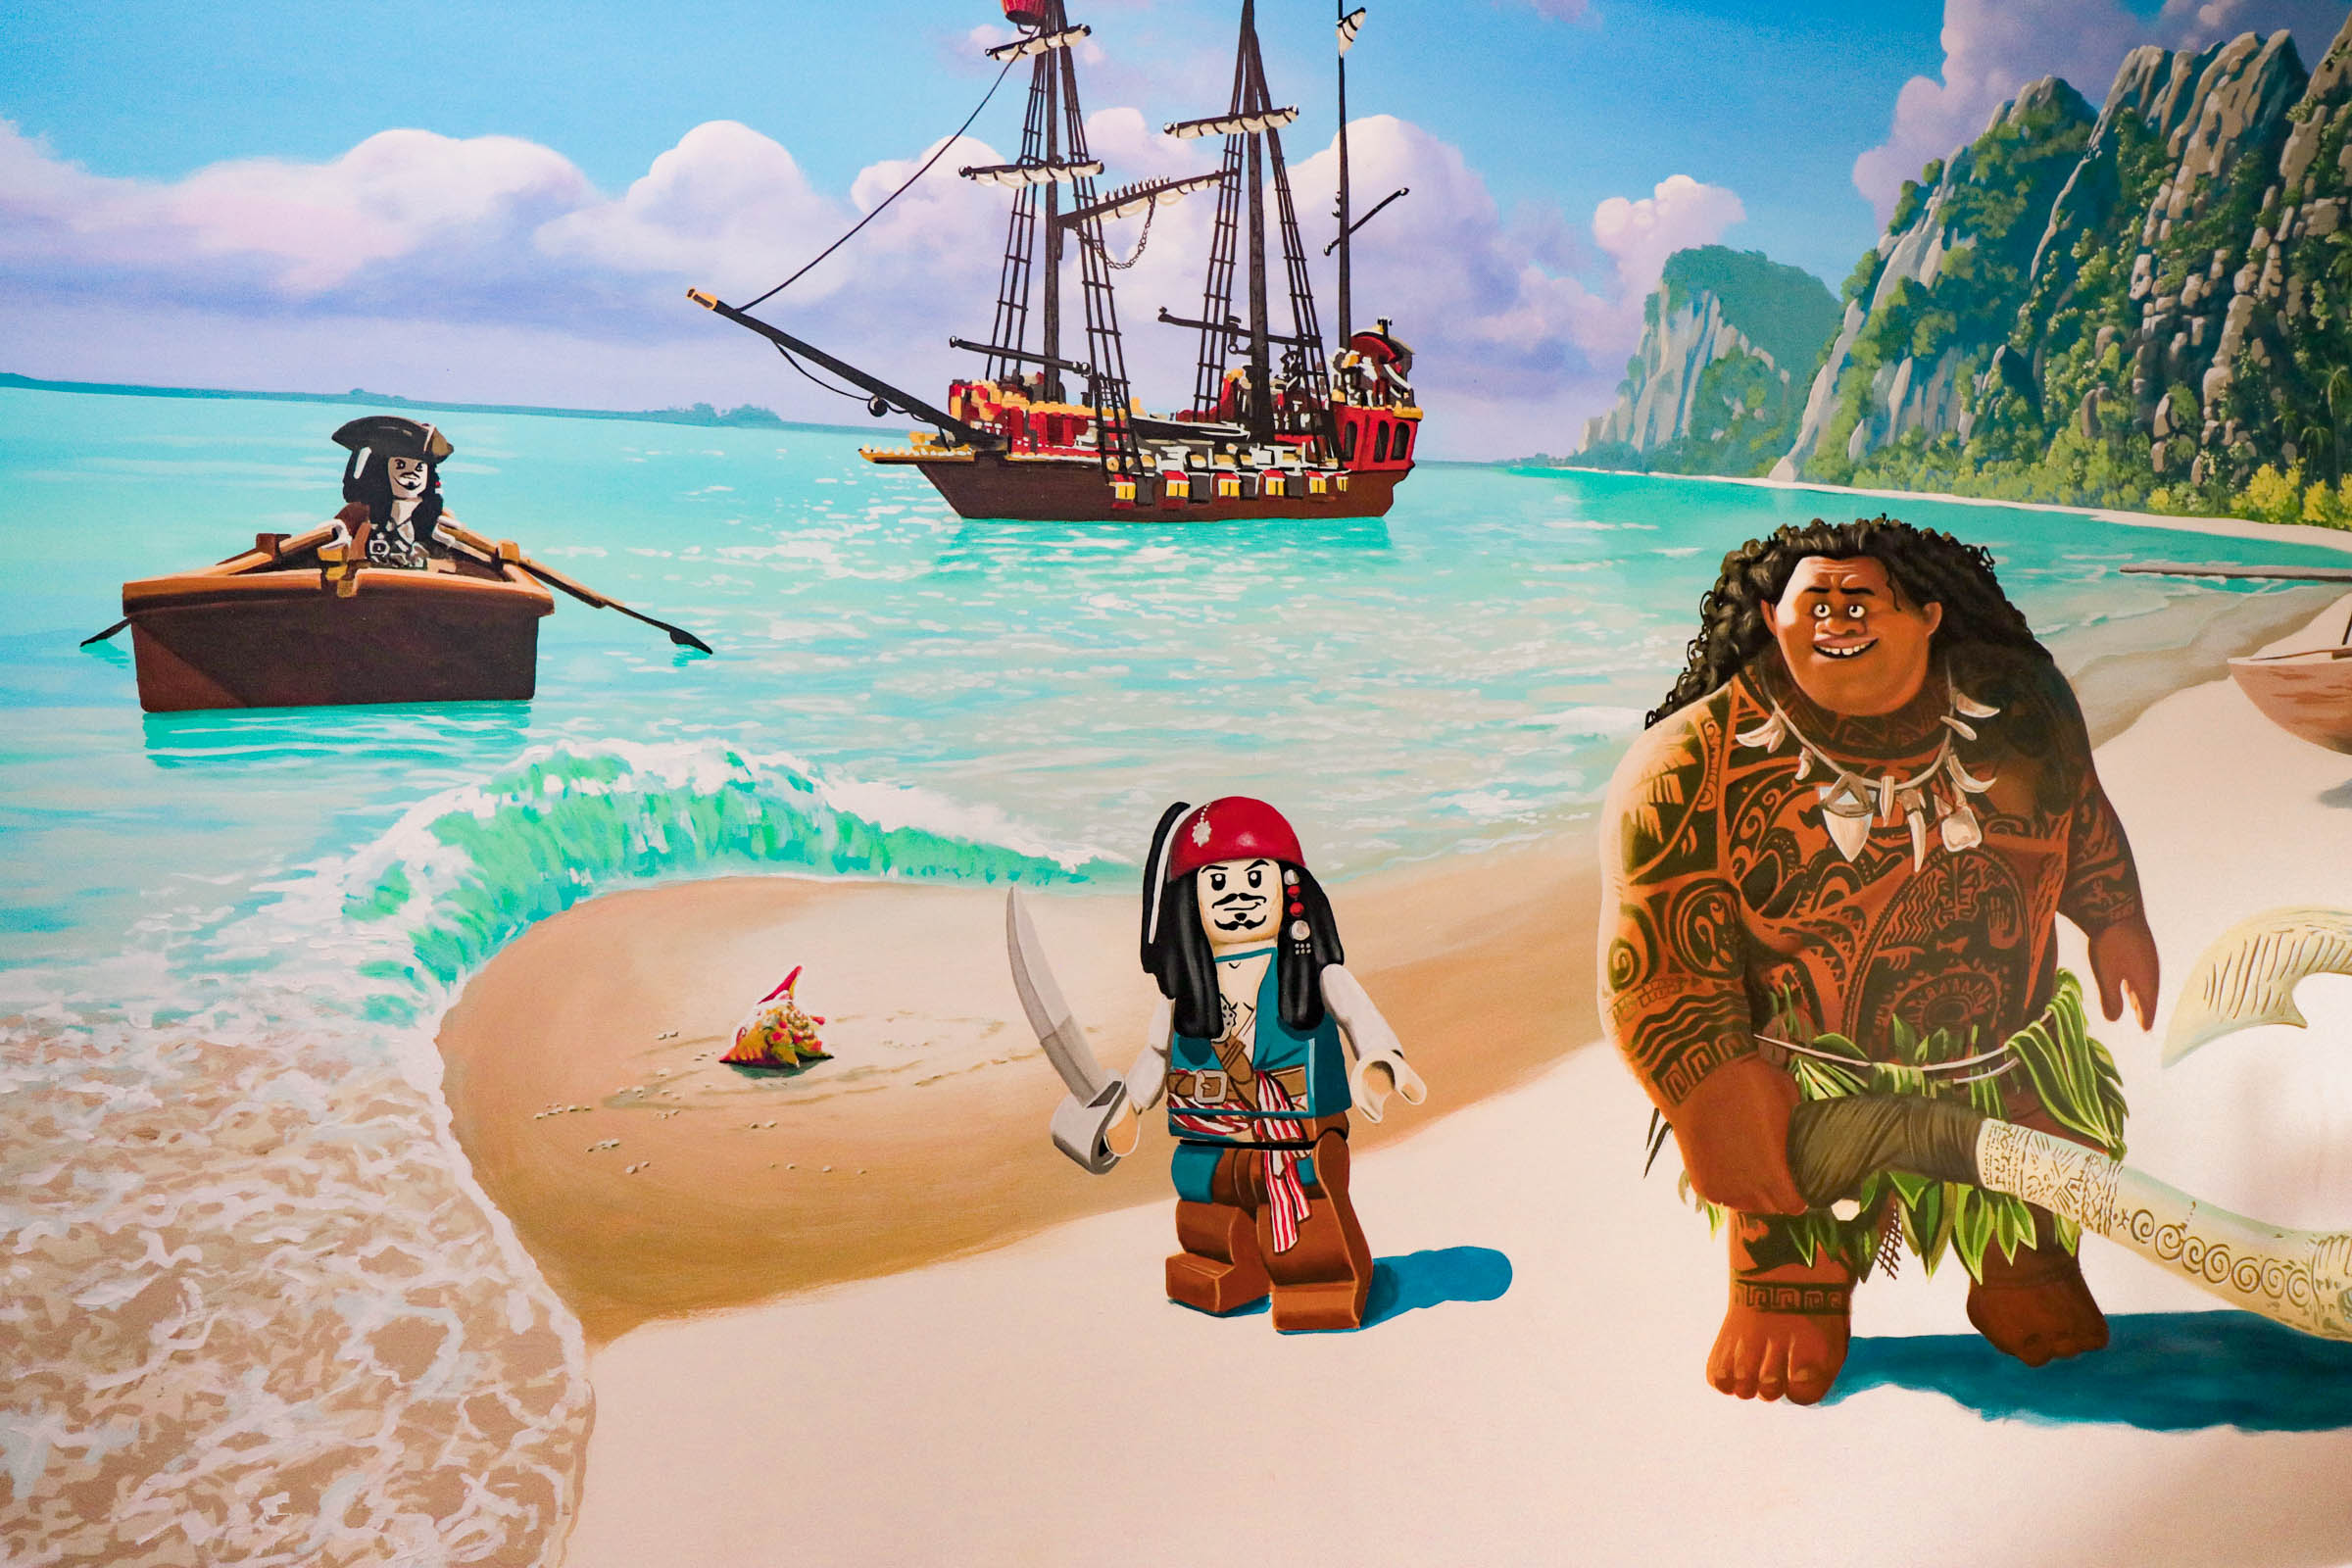 Maui and Lego Jack Sparrow mural